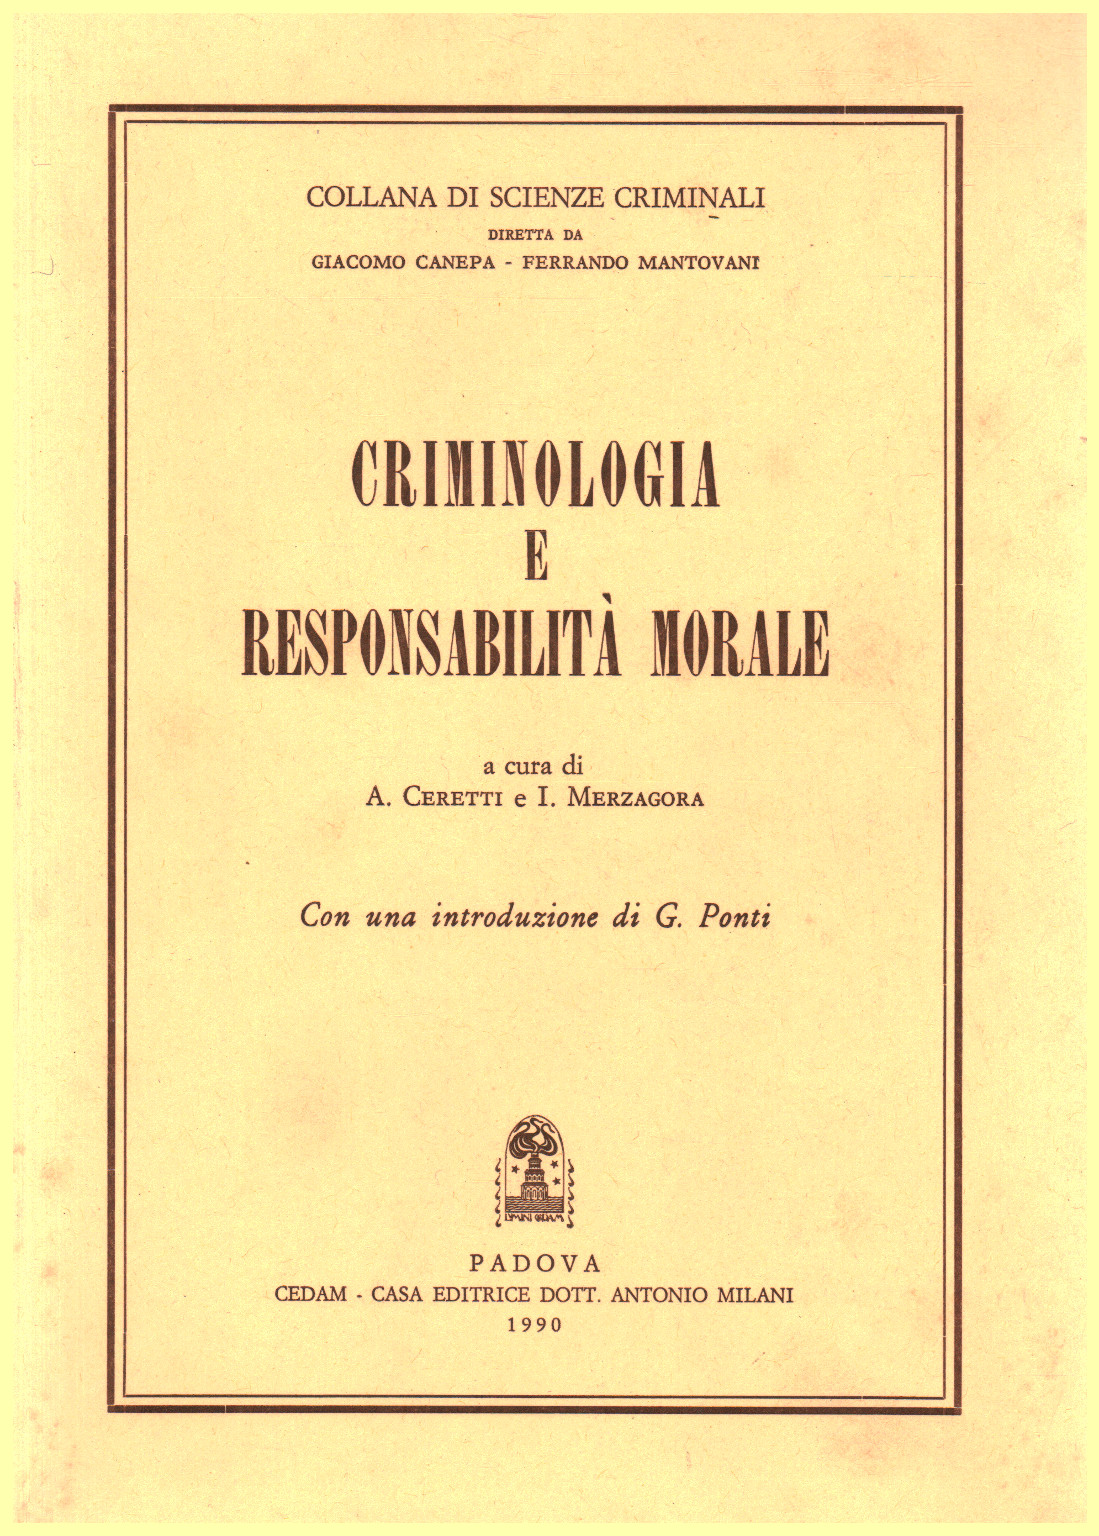 Criminologia e responsabilità morale